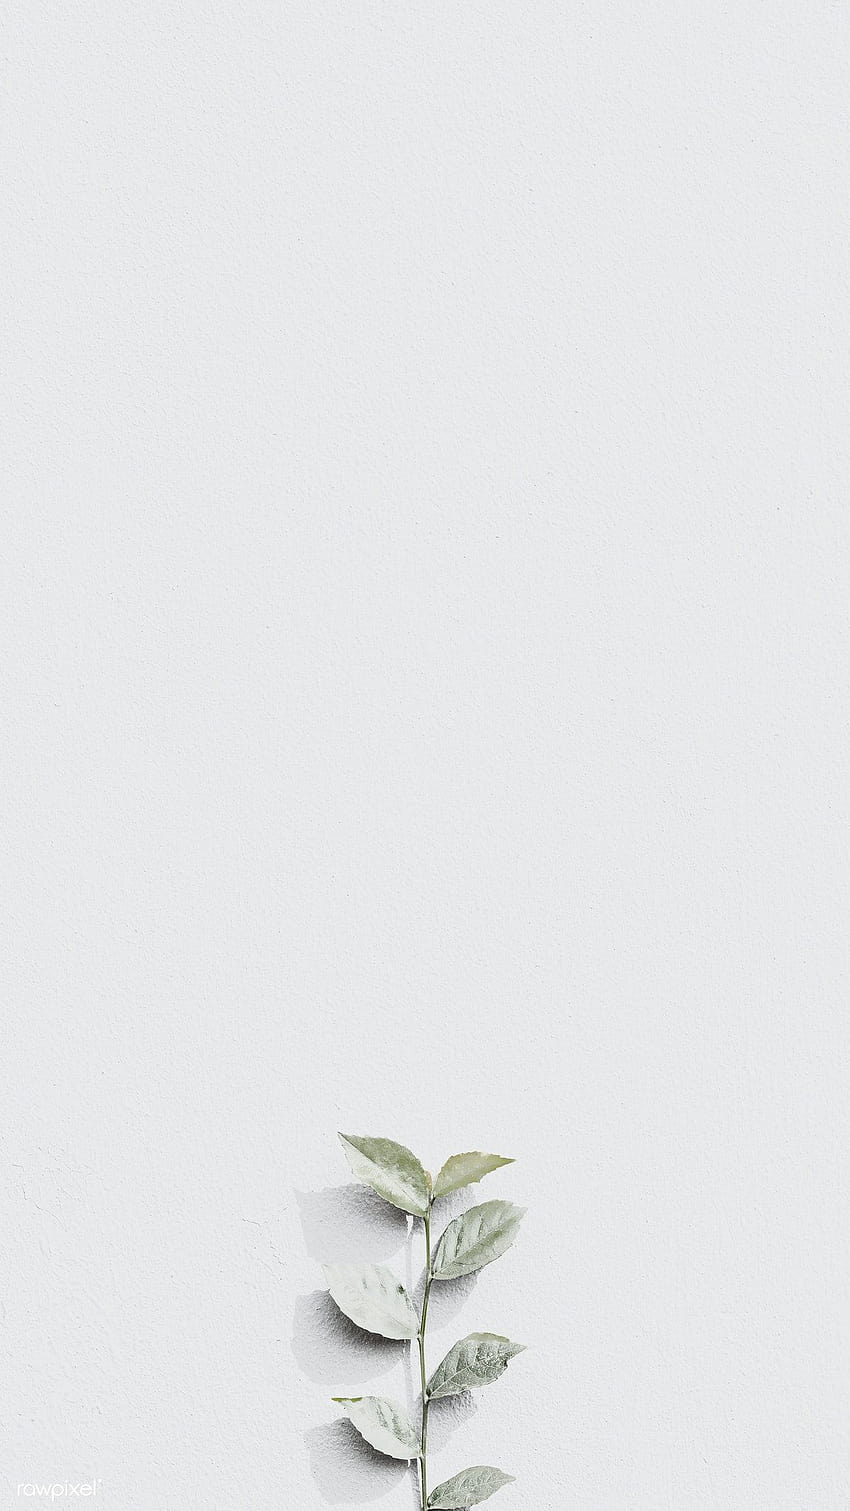 Weißer Pflanzenzweig auf einer grauen Ziegelwand in natürlichen hellen Hintergründen mobil, weiß leer HD-Handy-Hintergrundbild